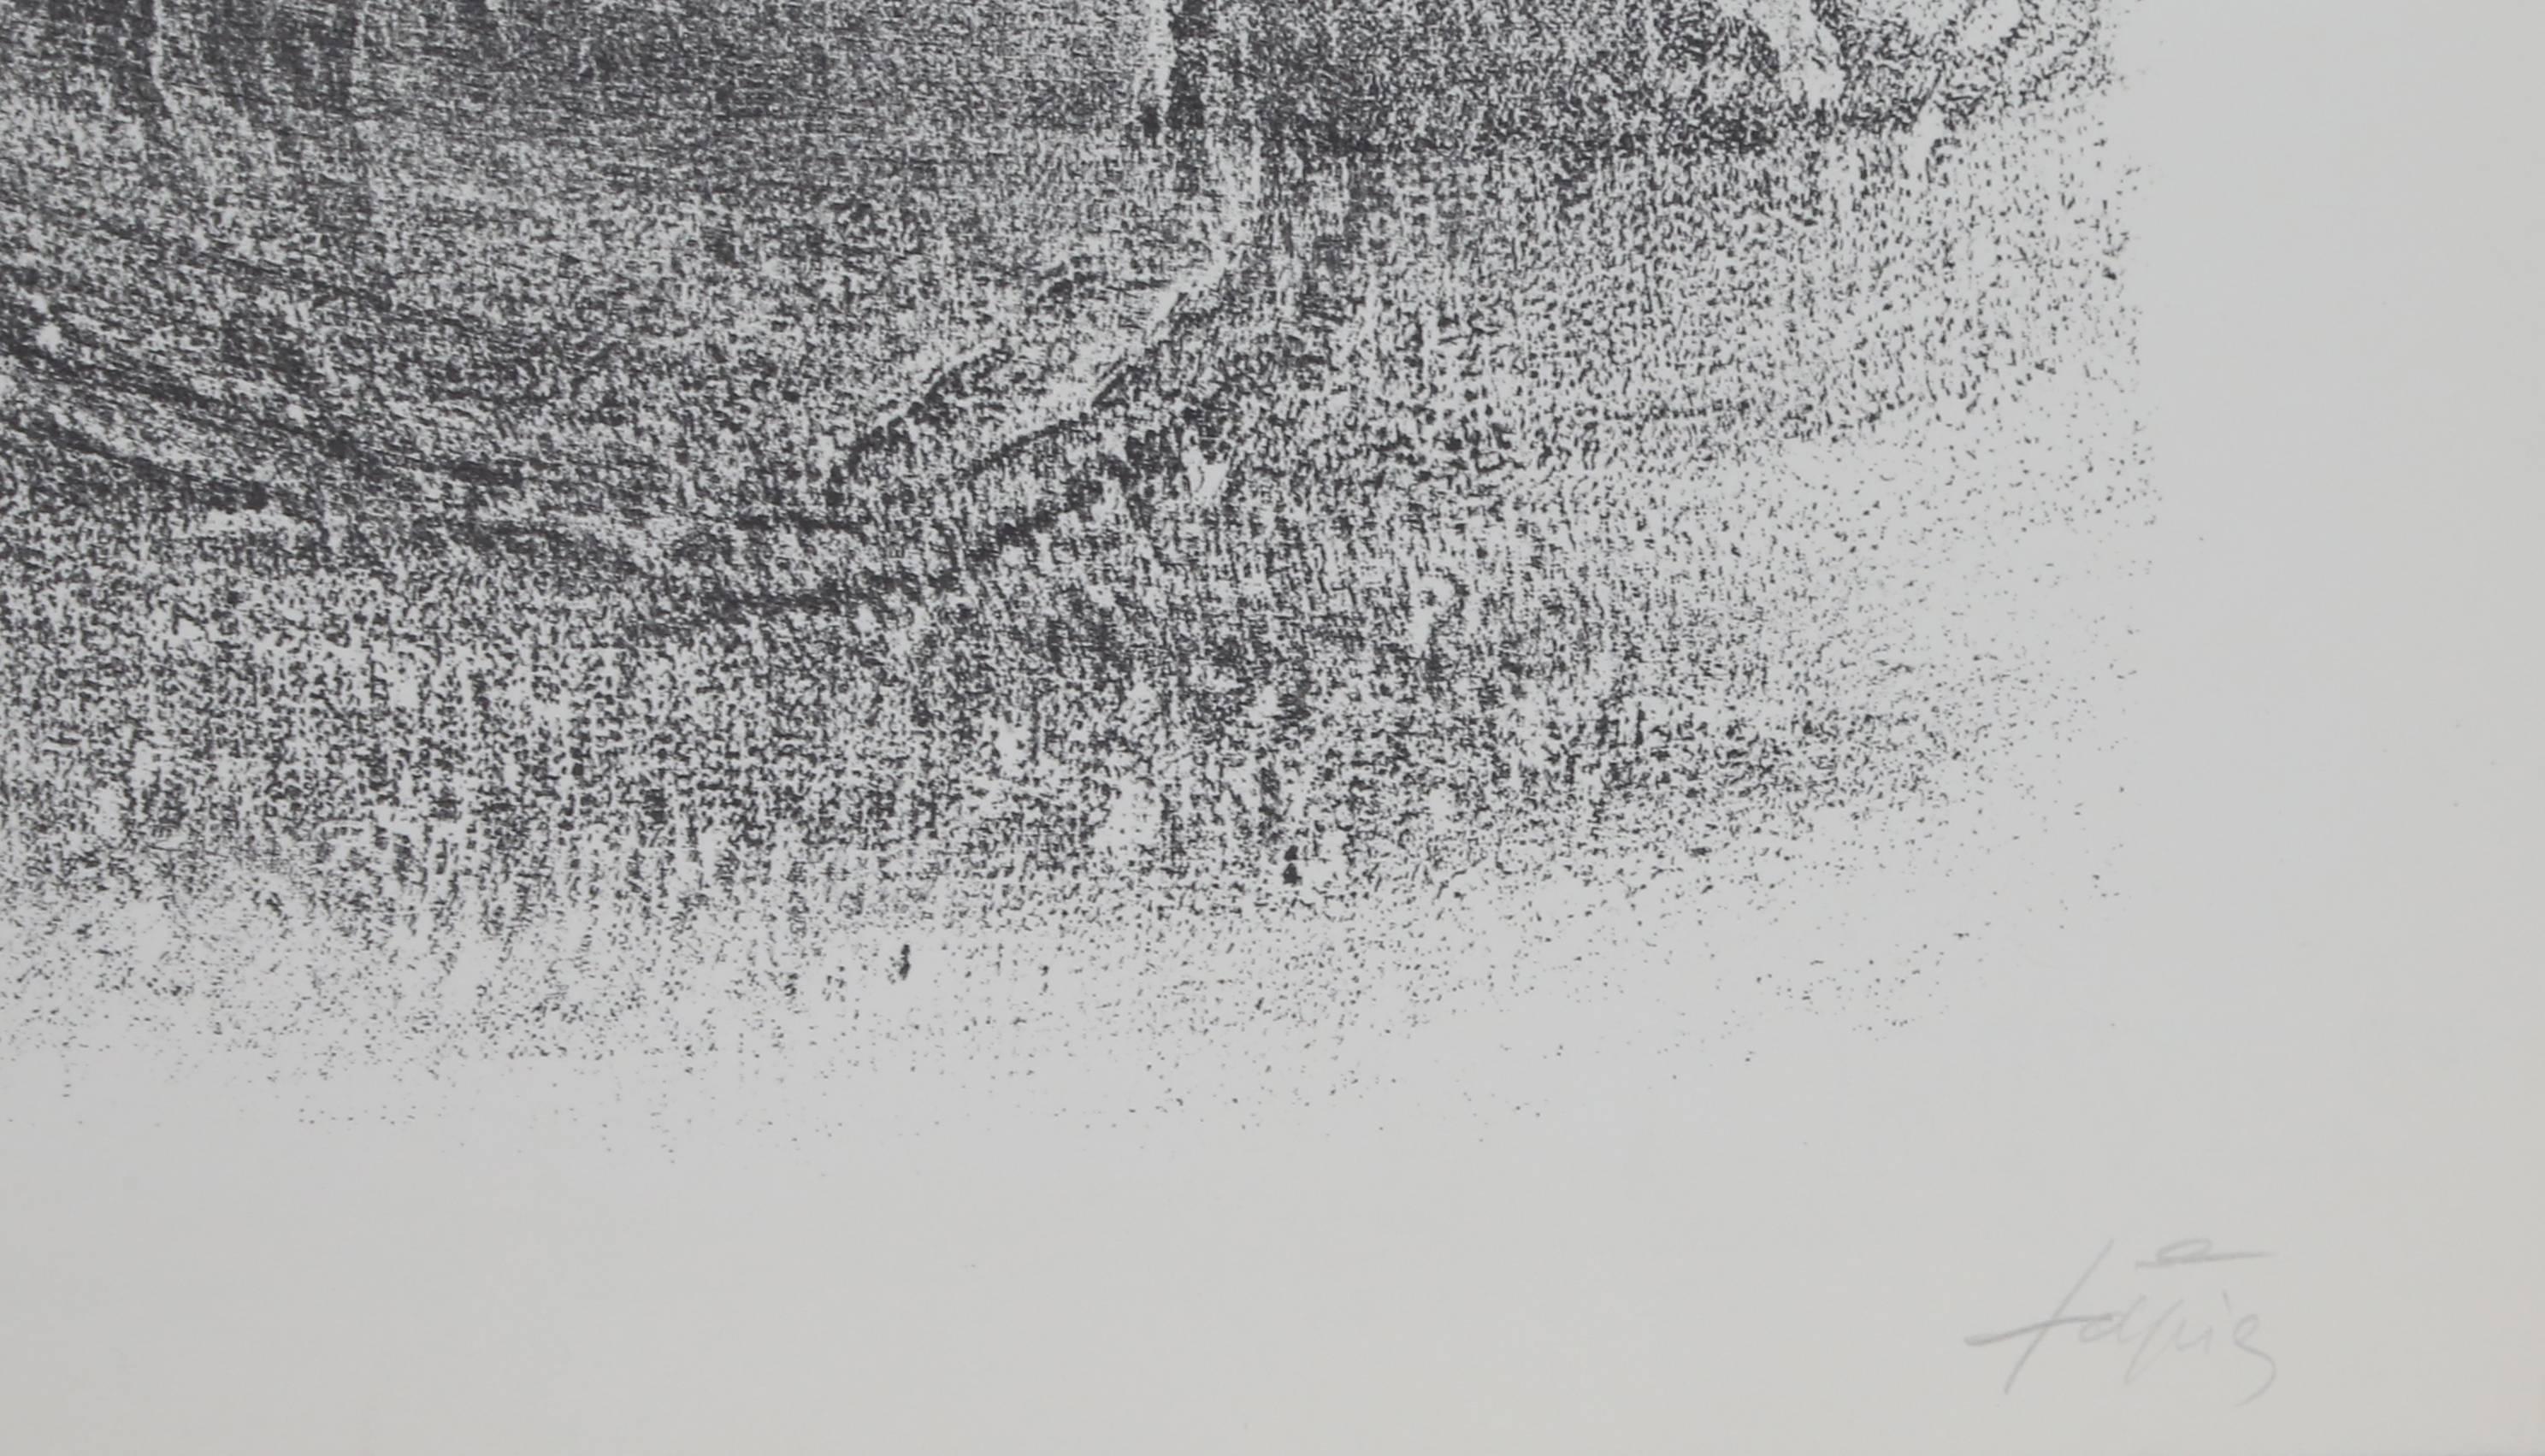 Abstrakte expressionistische Lithographie ohne Titel aus St. Gallen, Antoni Tapies – Print von Antoni Tàpies